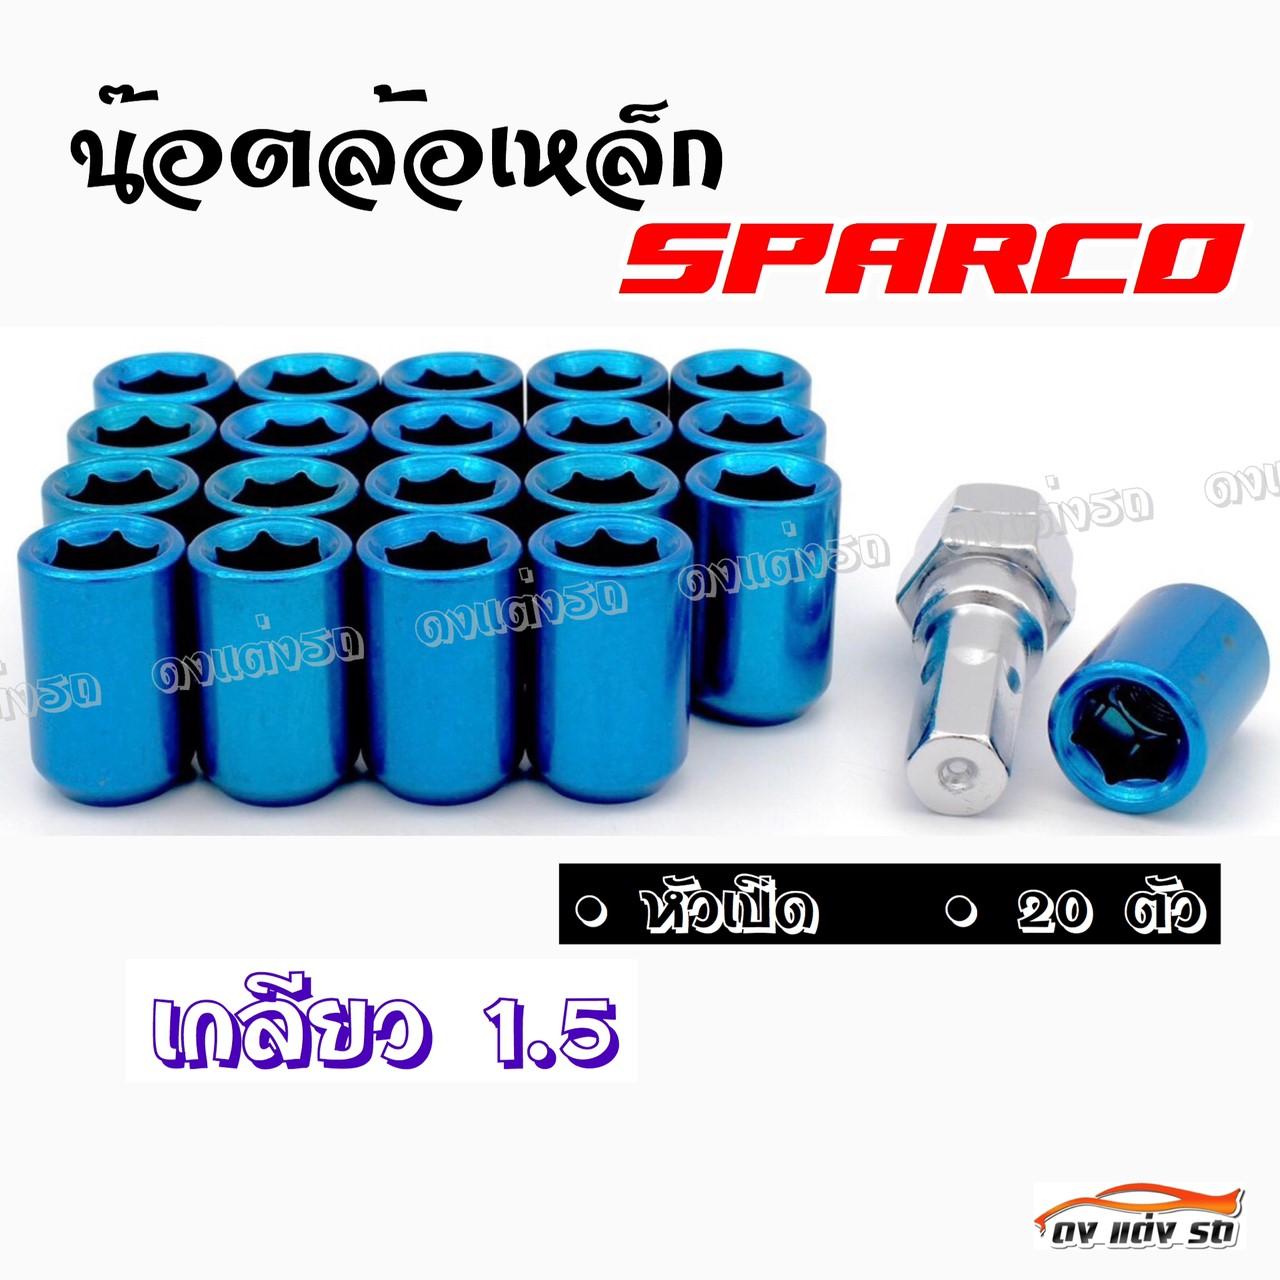 ดงแต่งรถ น๊อตล้อเหล็ก #หัวเปิด  SPARCO  เกลียว 1.5 /    ++ 1ชุด มี 20 ตัว ++     **สีฟ้า,น้ำเงิน**